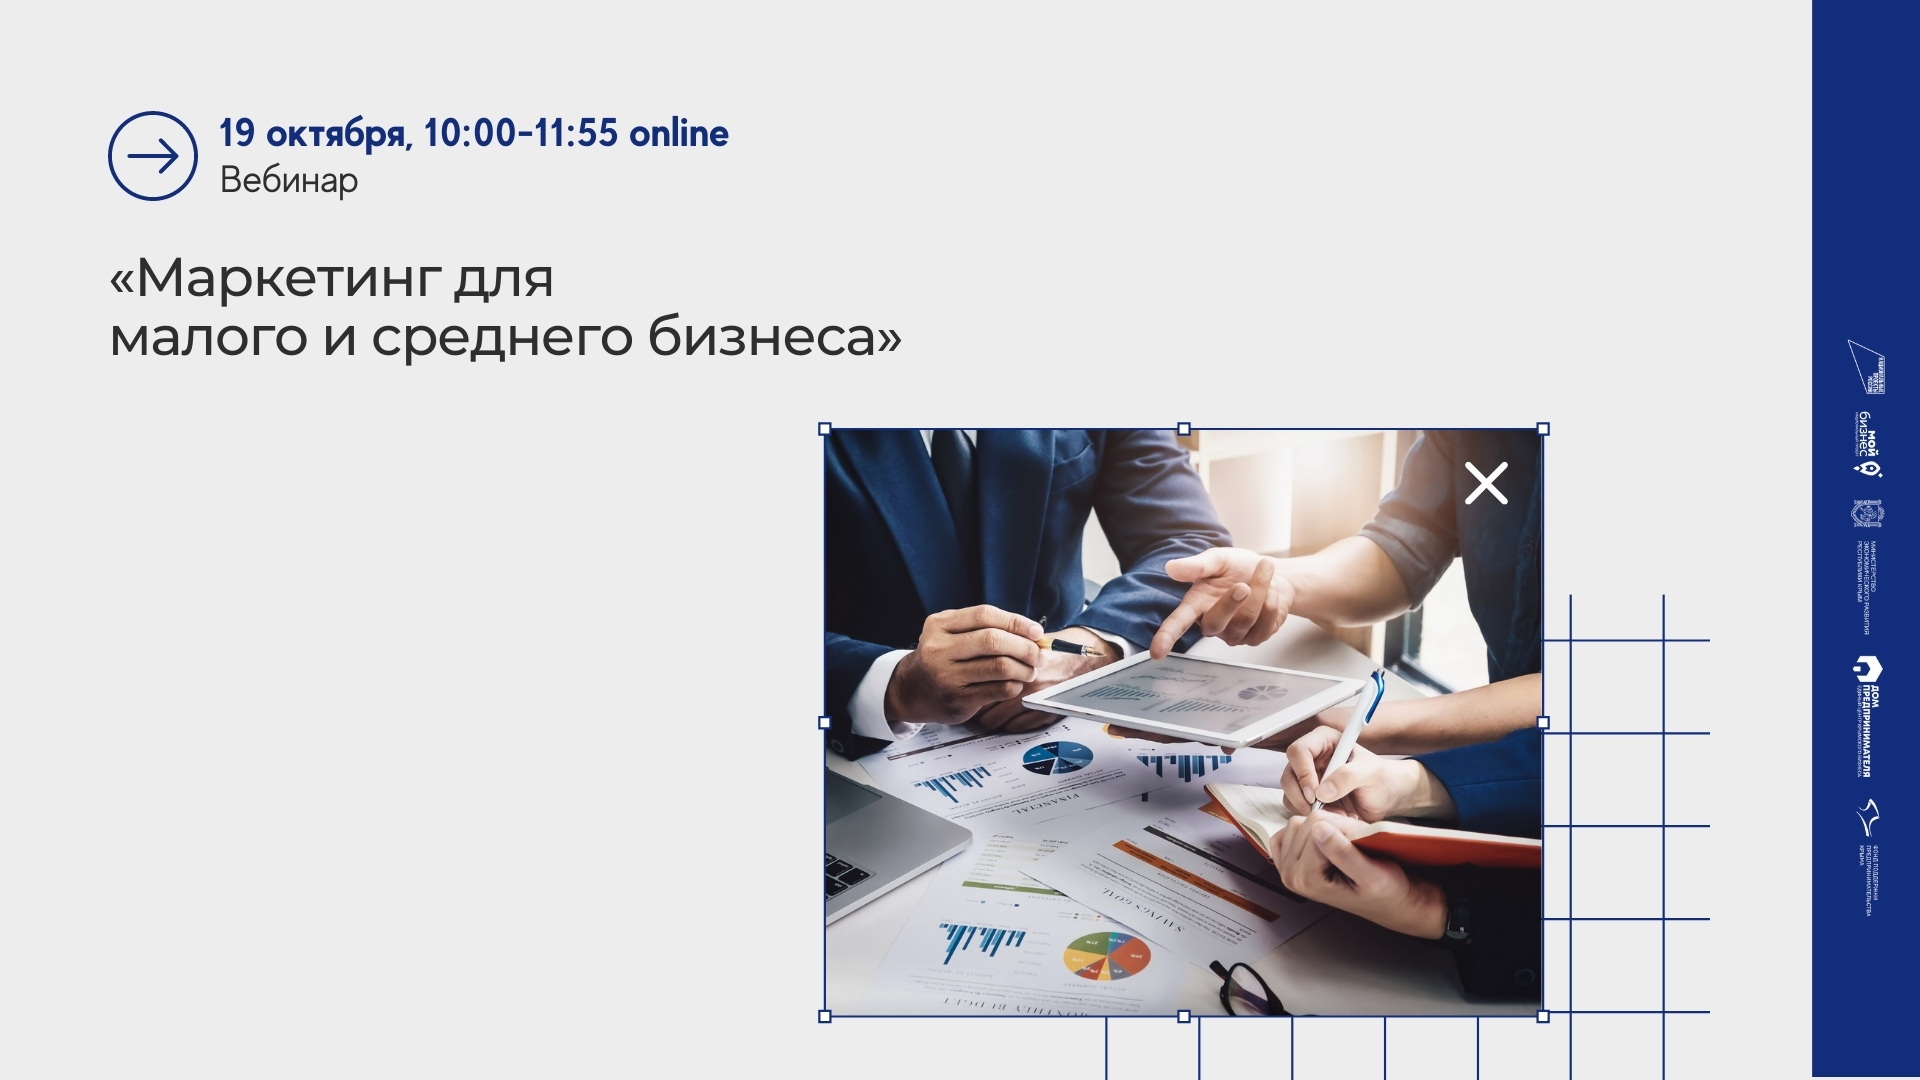 Вебинар от Минэкономразвития РФ «Маркетинг для малого и среднего бизнеса: как продвигать компанию в интернете и социальных сетях»